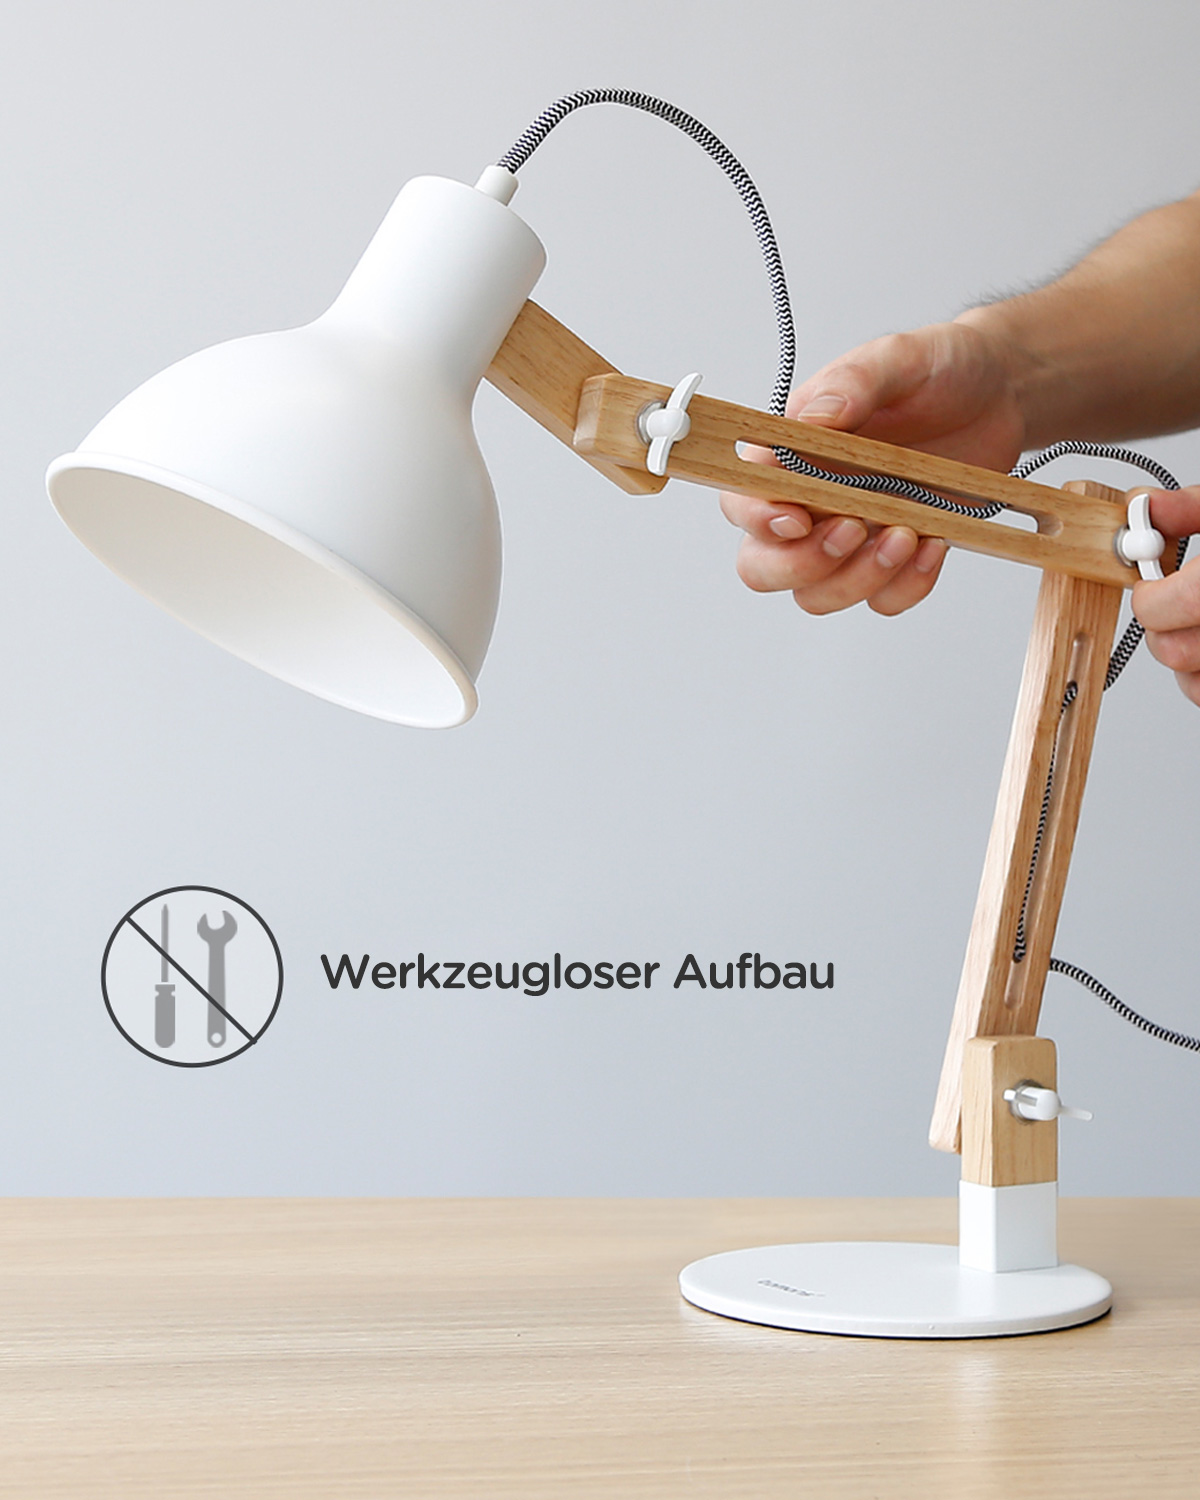 Arm, verstellbarem klassichen Leselampe Augenfreundliche Lampe mit im Leselampe, Holz-Design, TOMONS Schreibtischlampe LED